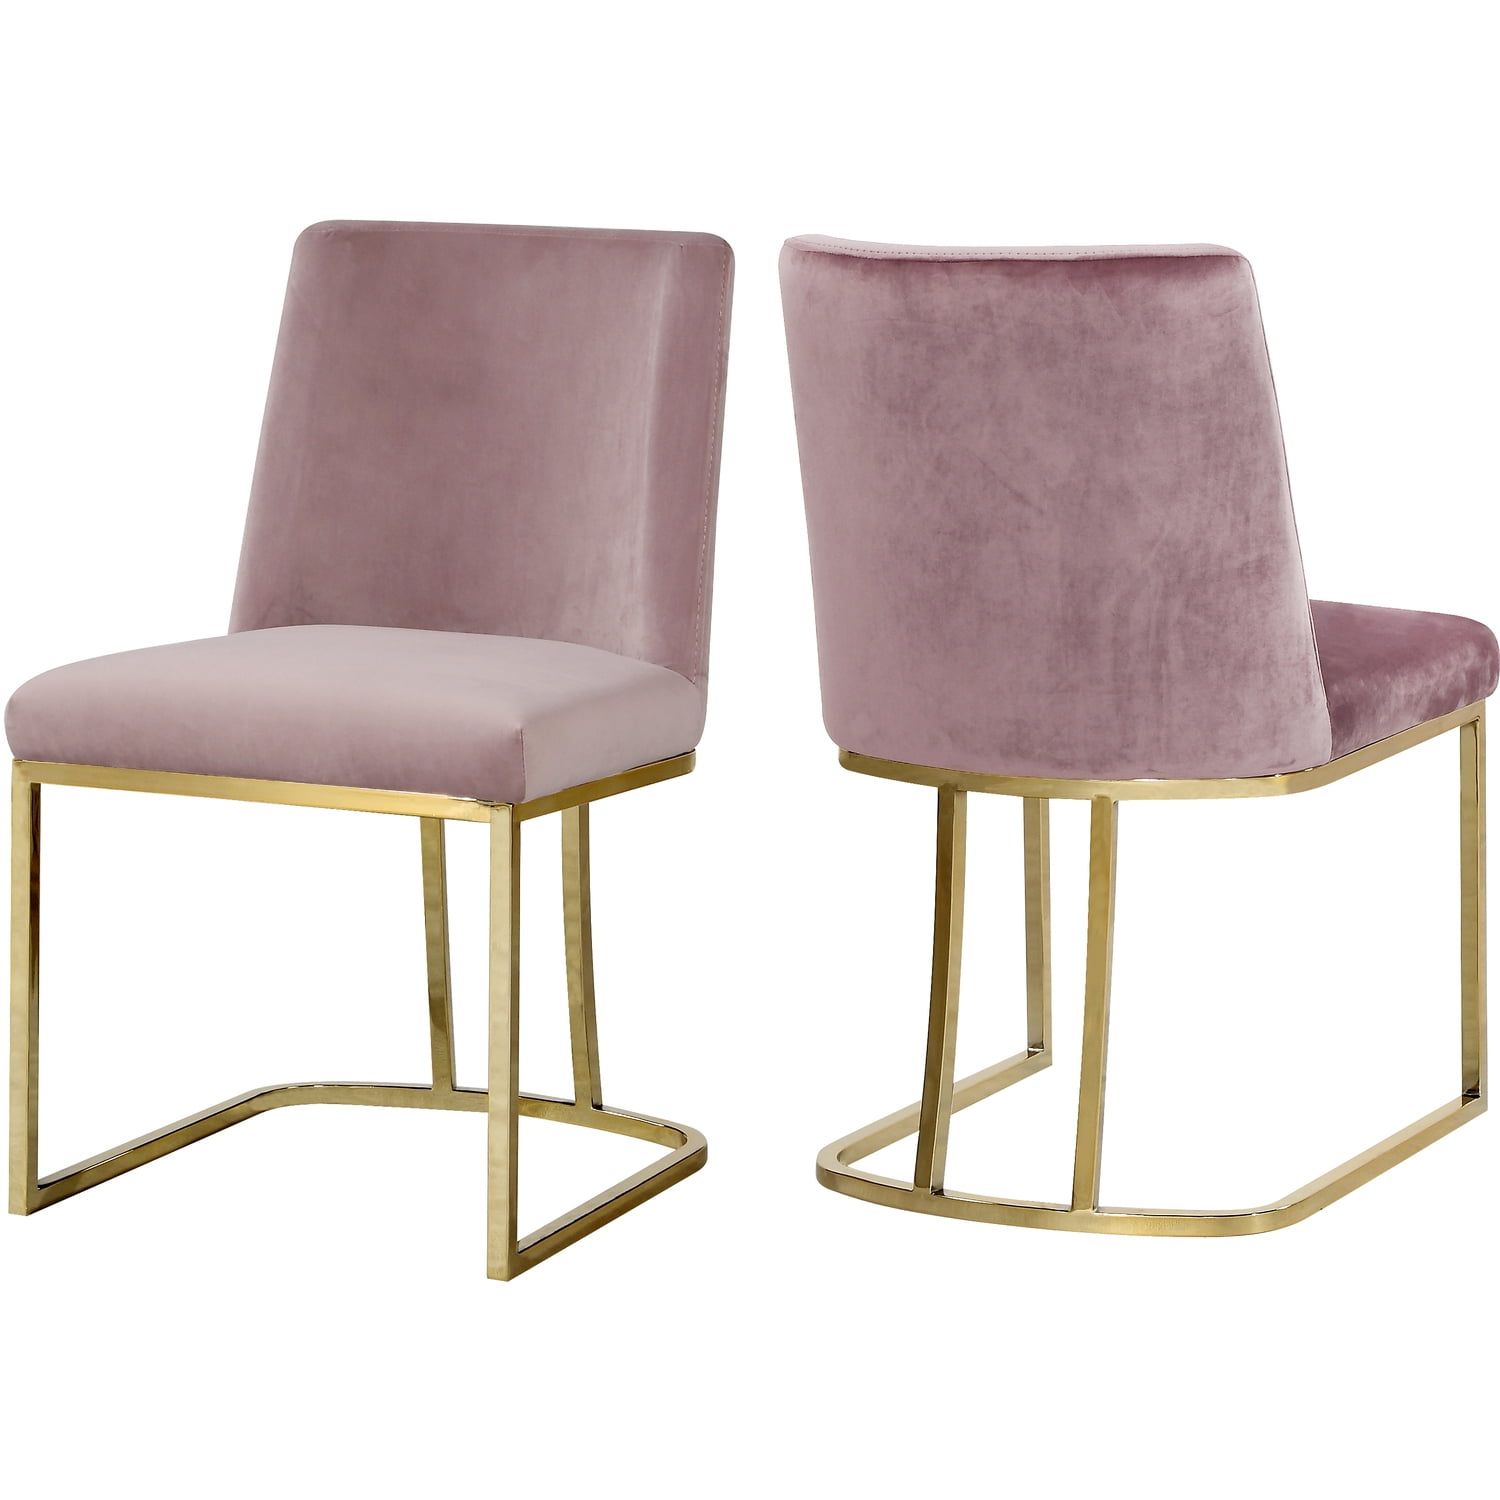 Heidi Plush Pink Velvet Upholstered Side Chair with Gold Metal Frame